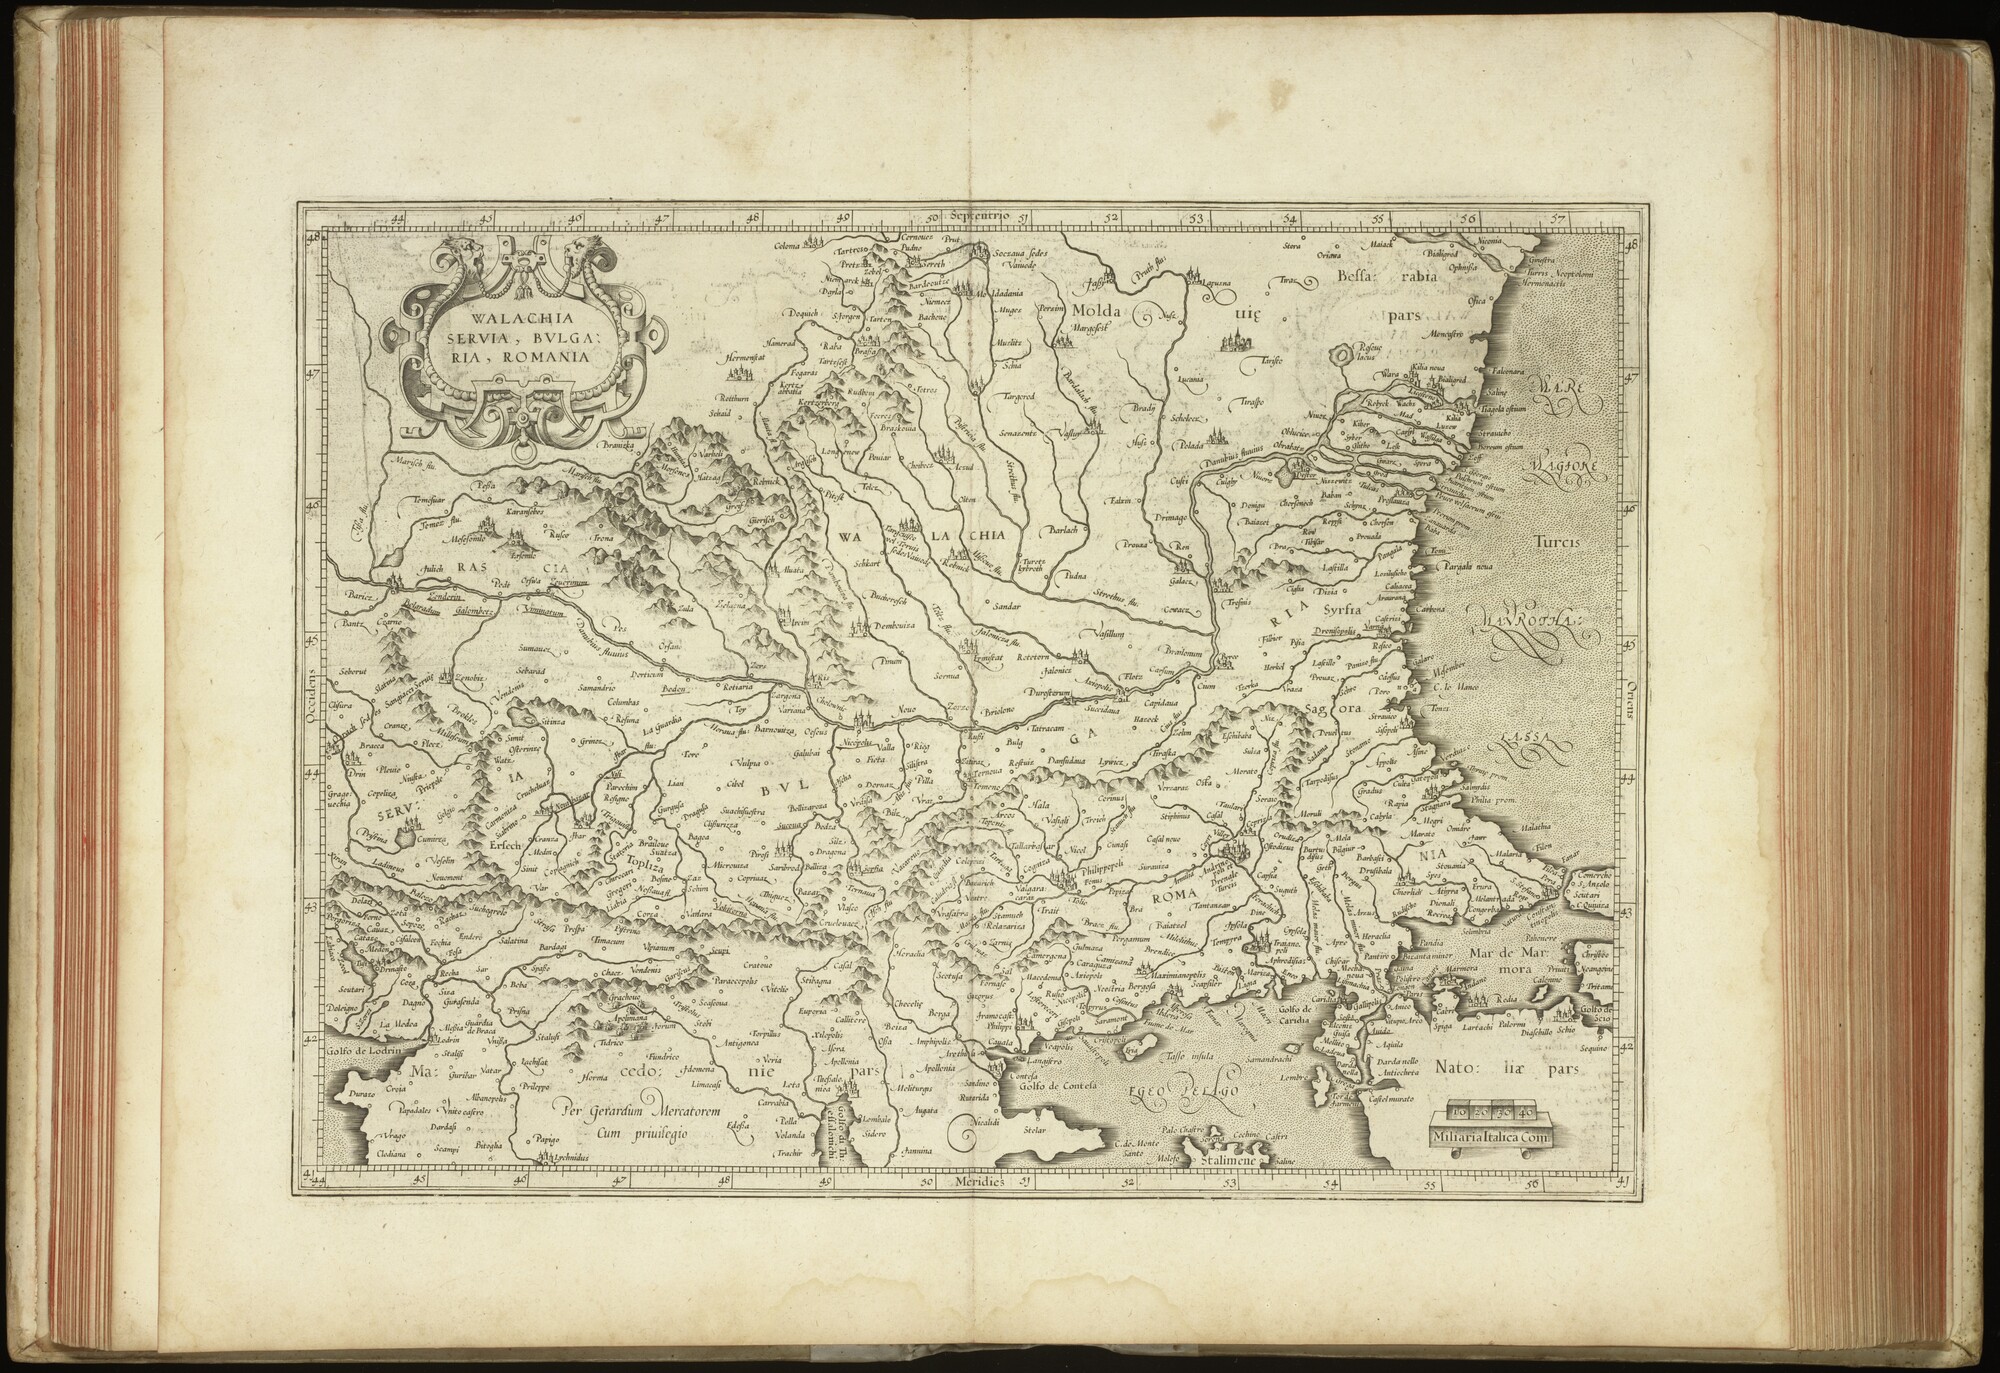 A.0145(227) [kaart 142]; Kaart van Zuidoost-Europa tussen Belgrado, Pristina, Tulcea en Istanbul; kaart